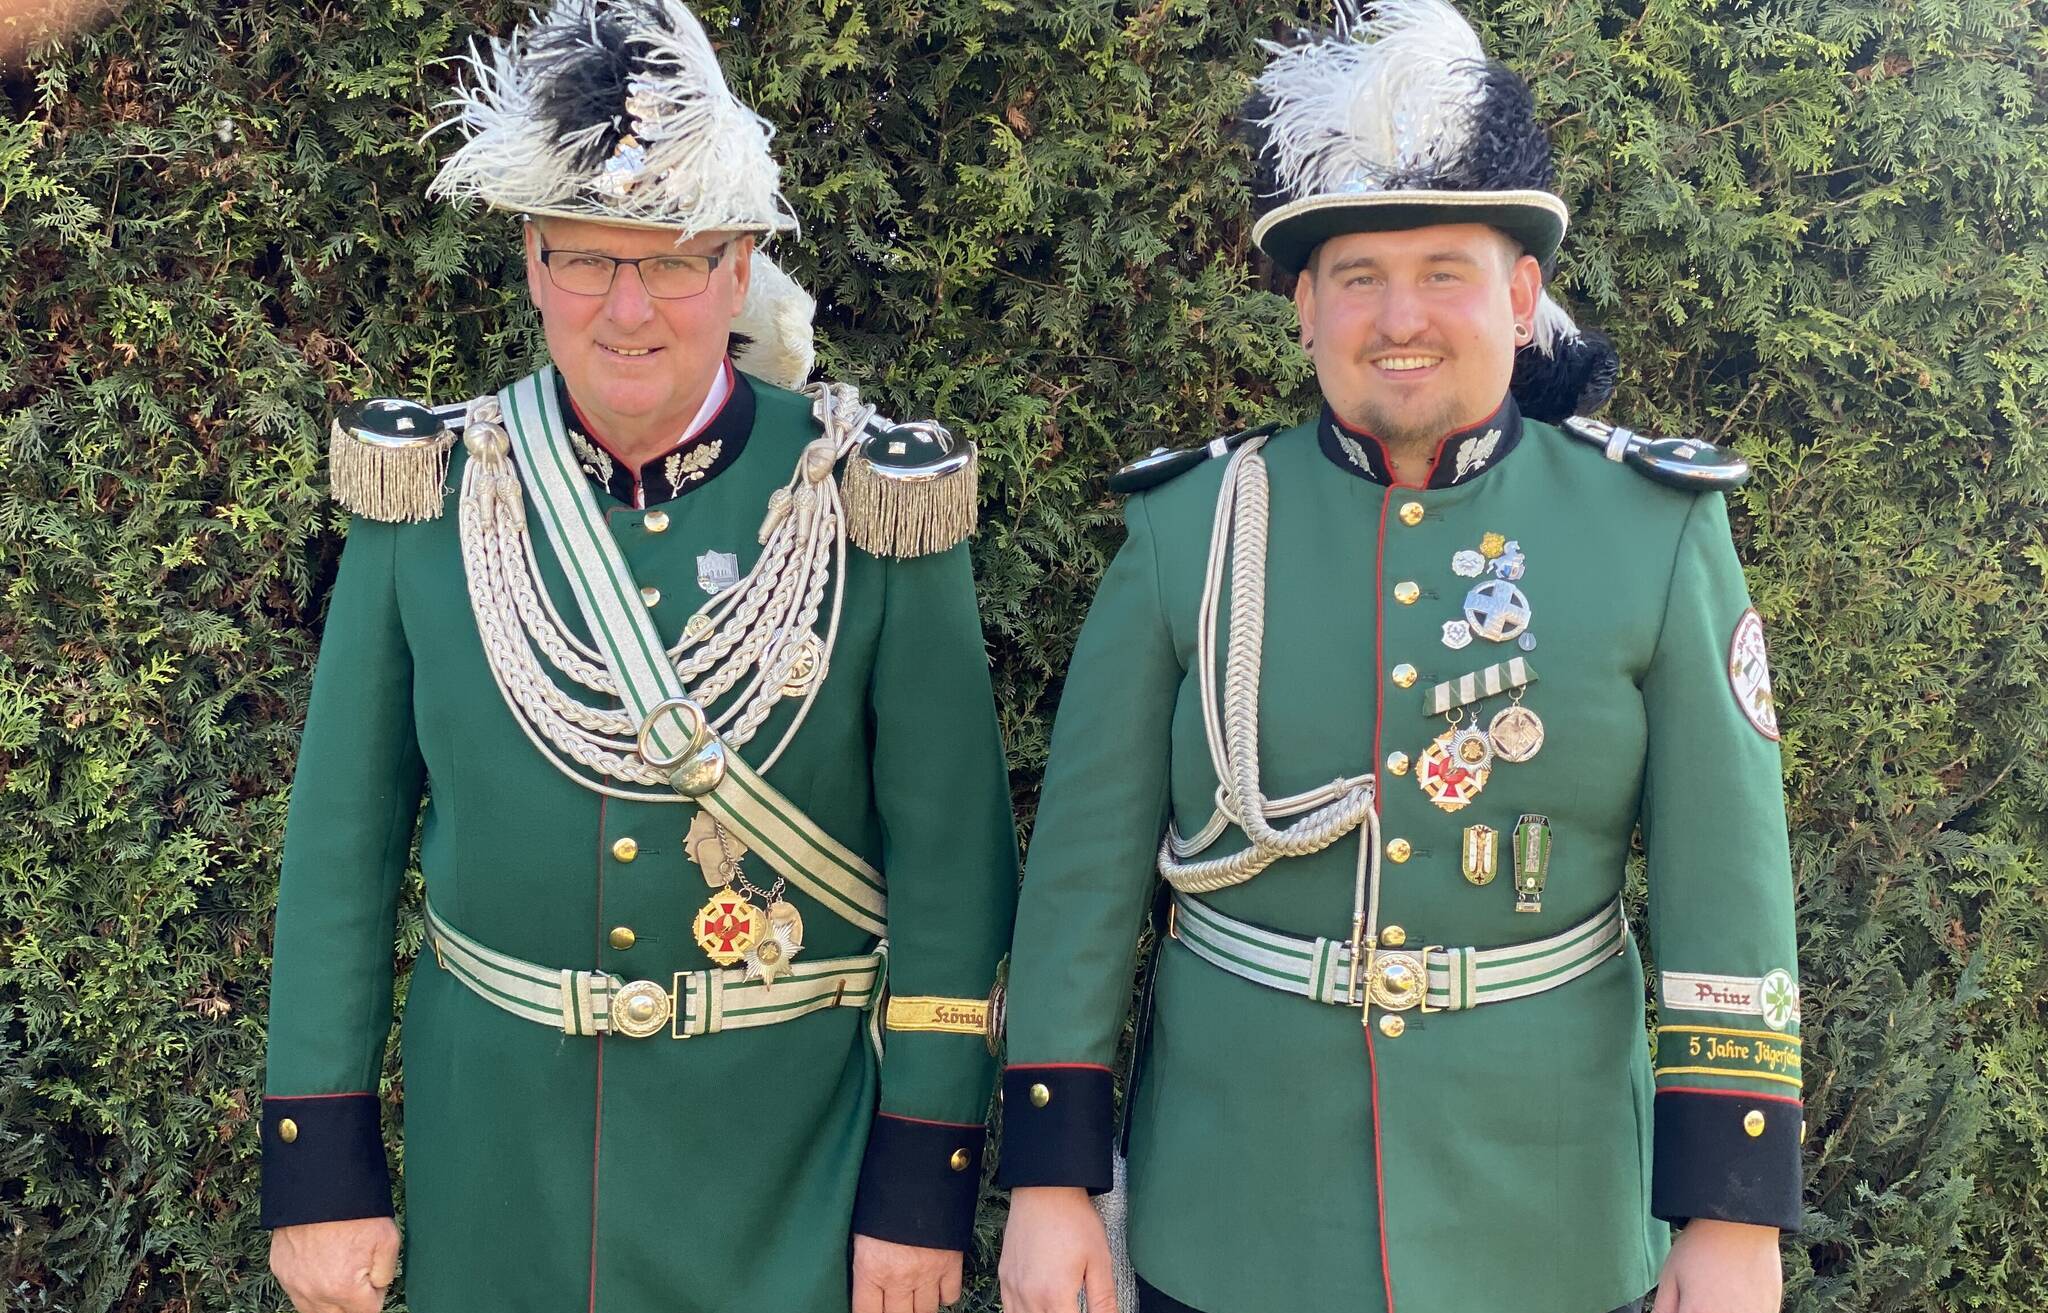  Jägermajor Manfred Weitz (links) und sein Adjutant Mike Dlugosz.	 